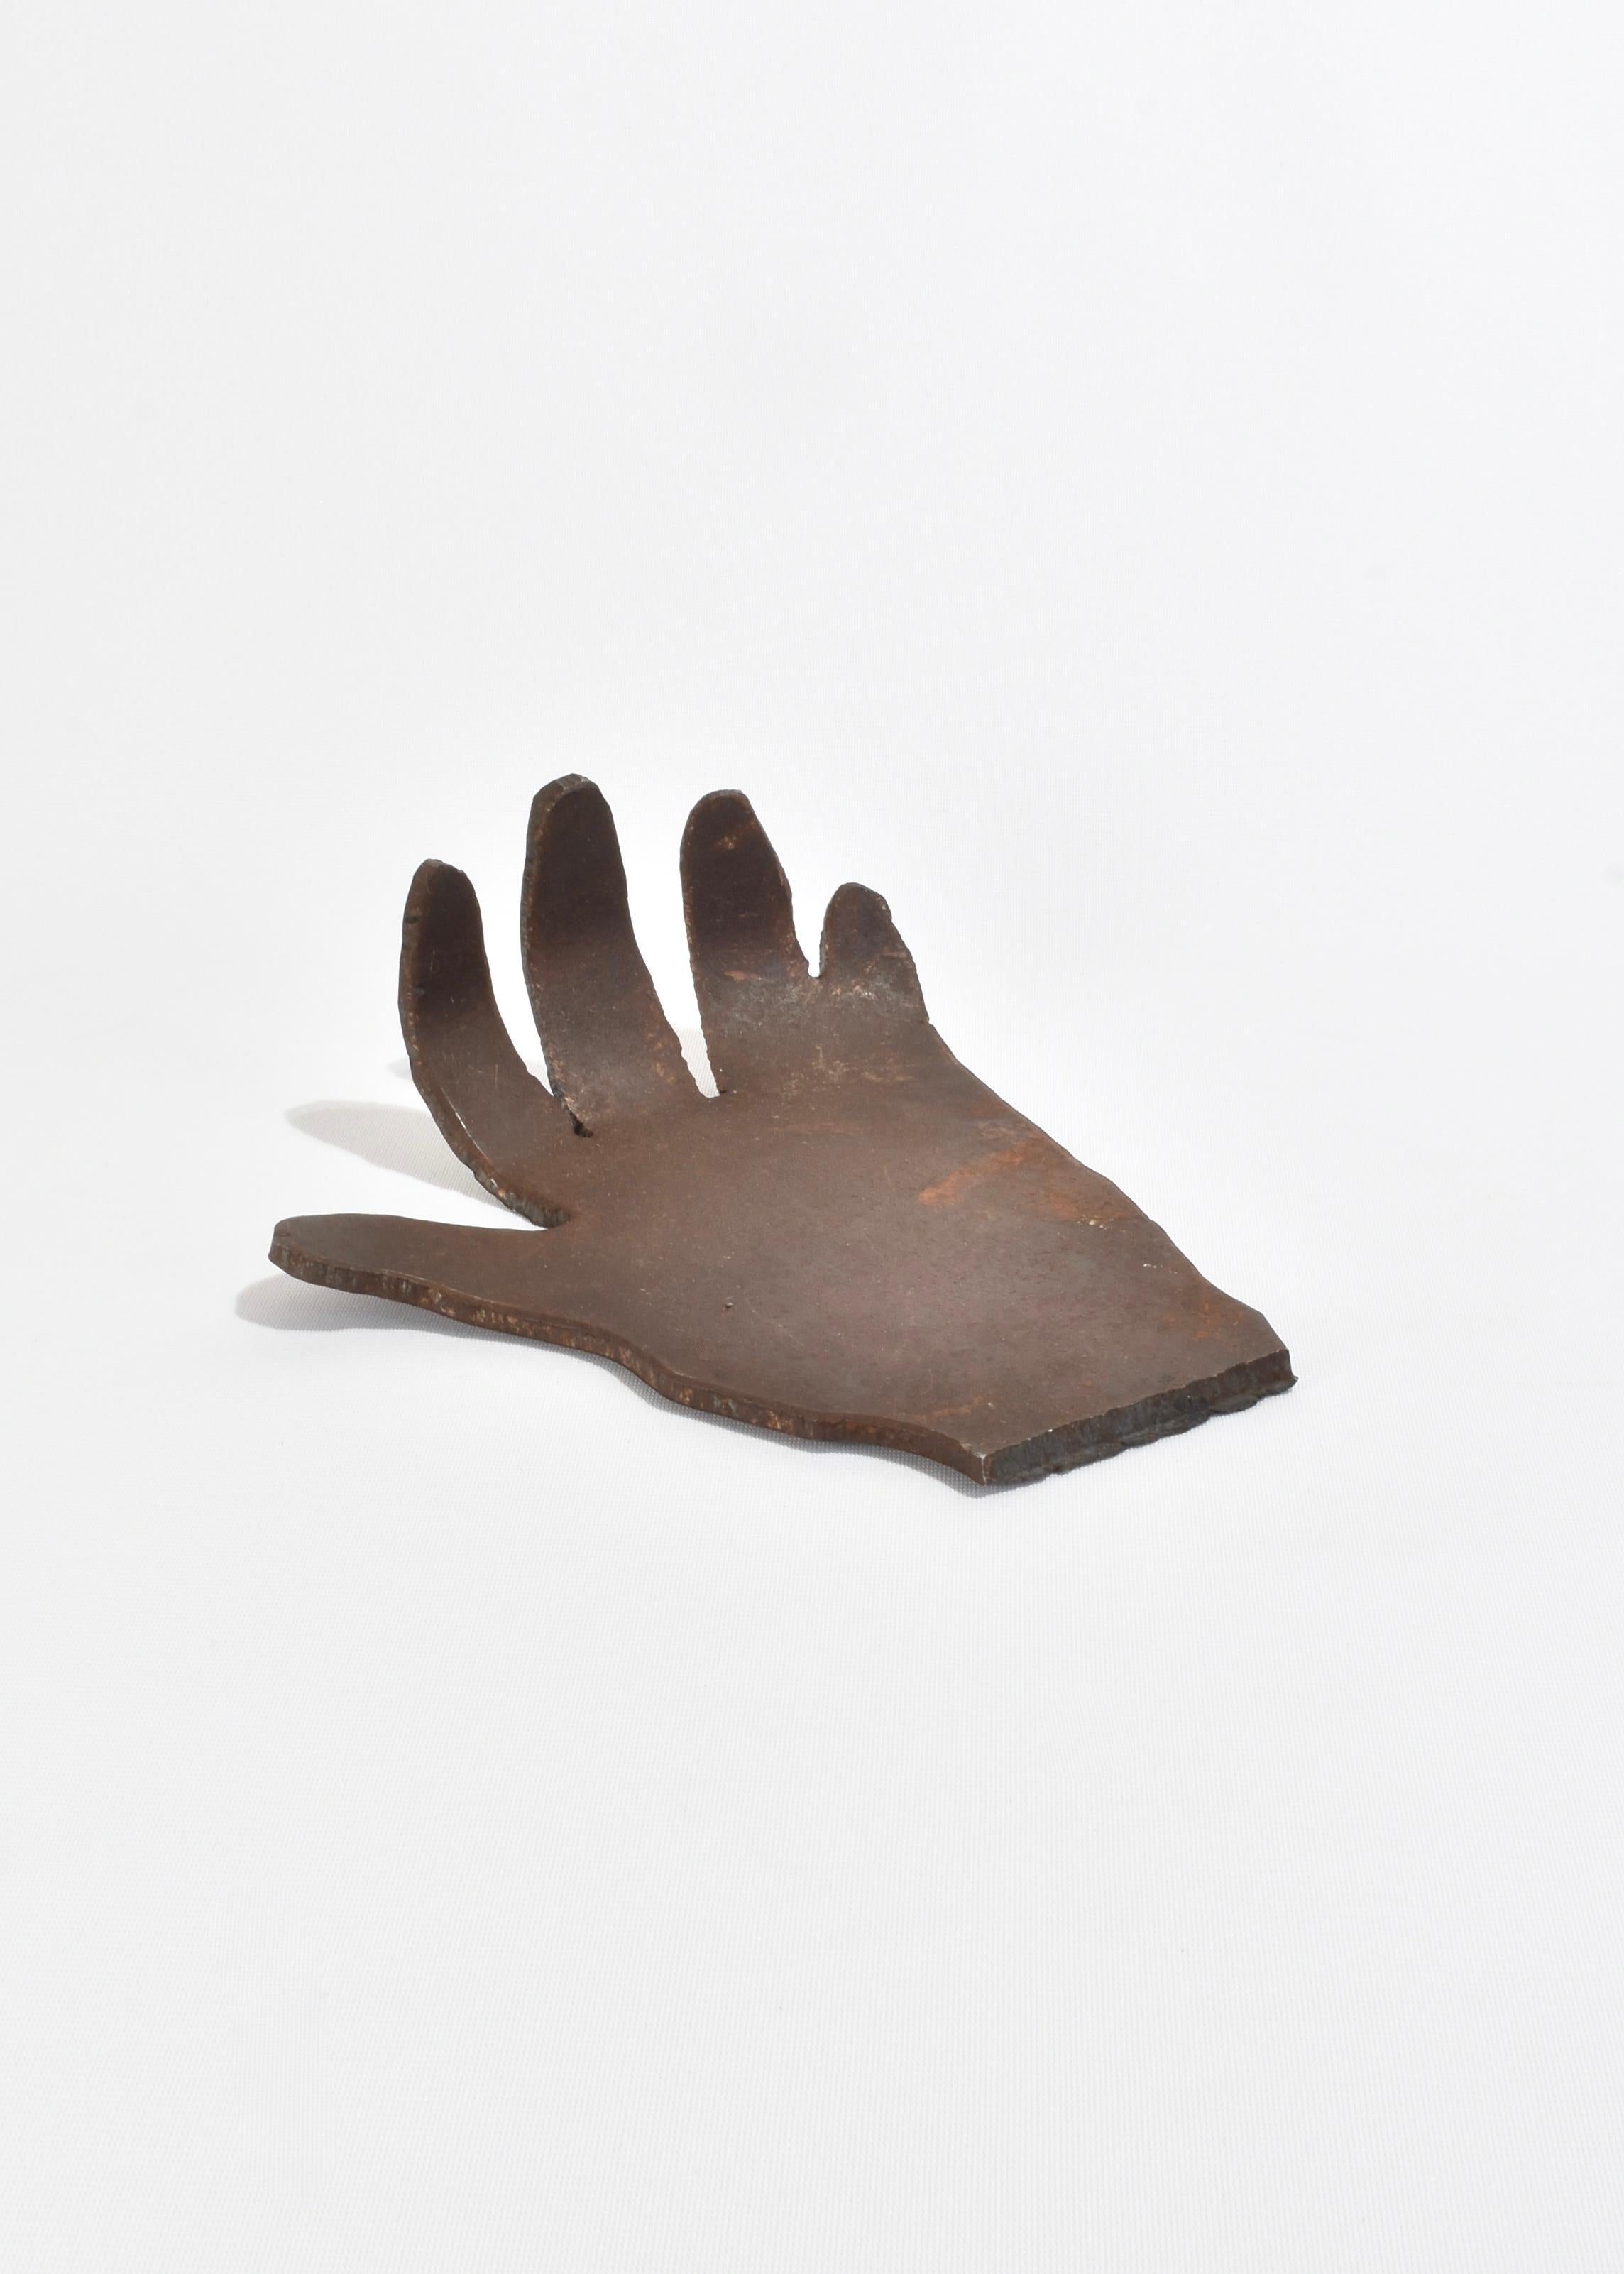 Fait main Sculpture de la main en vente